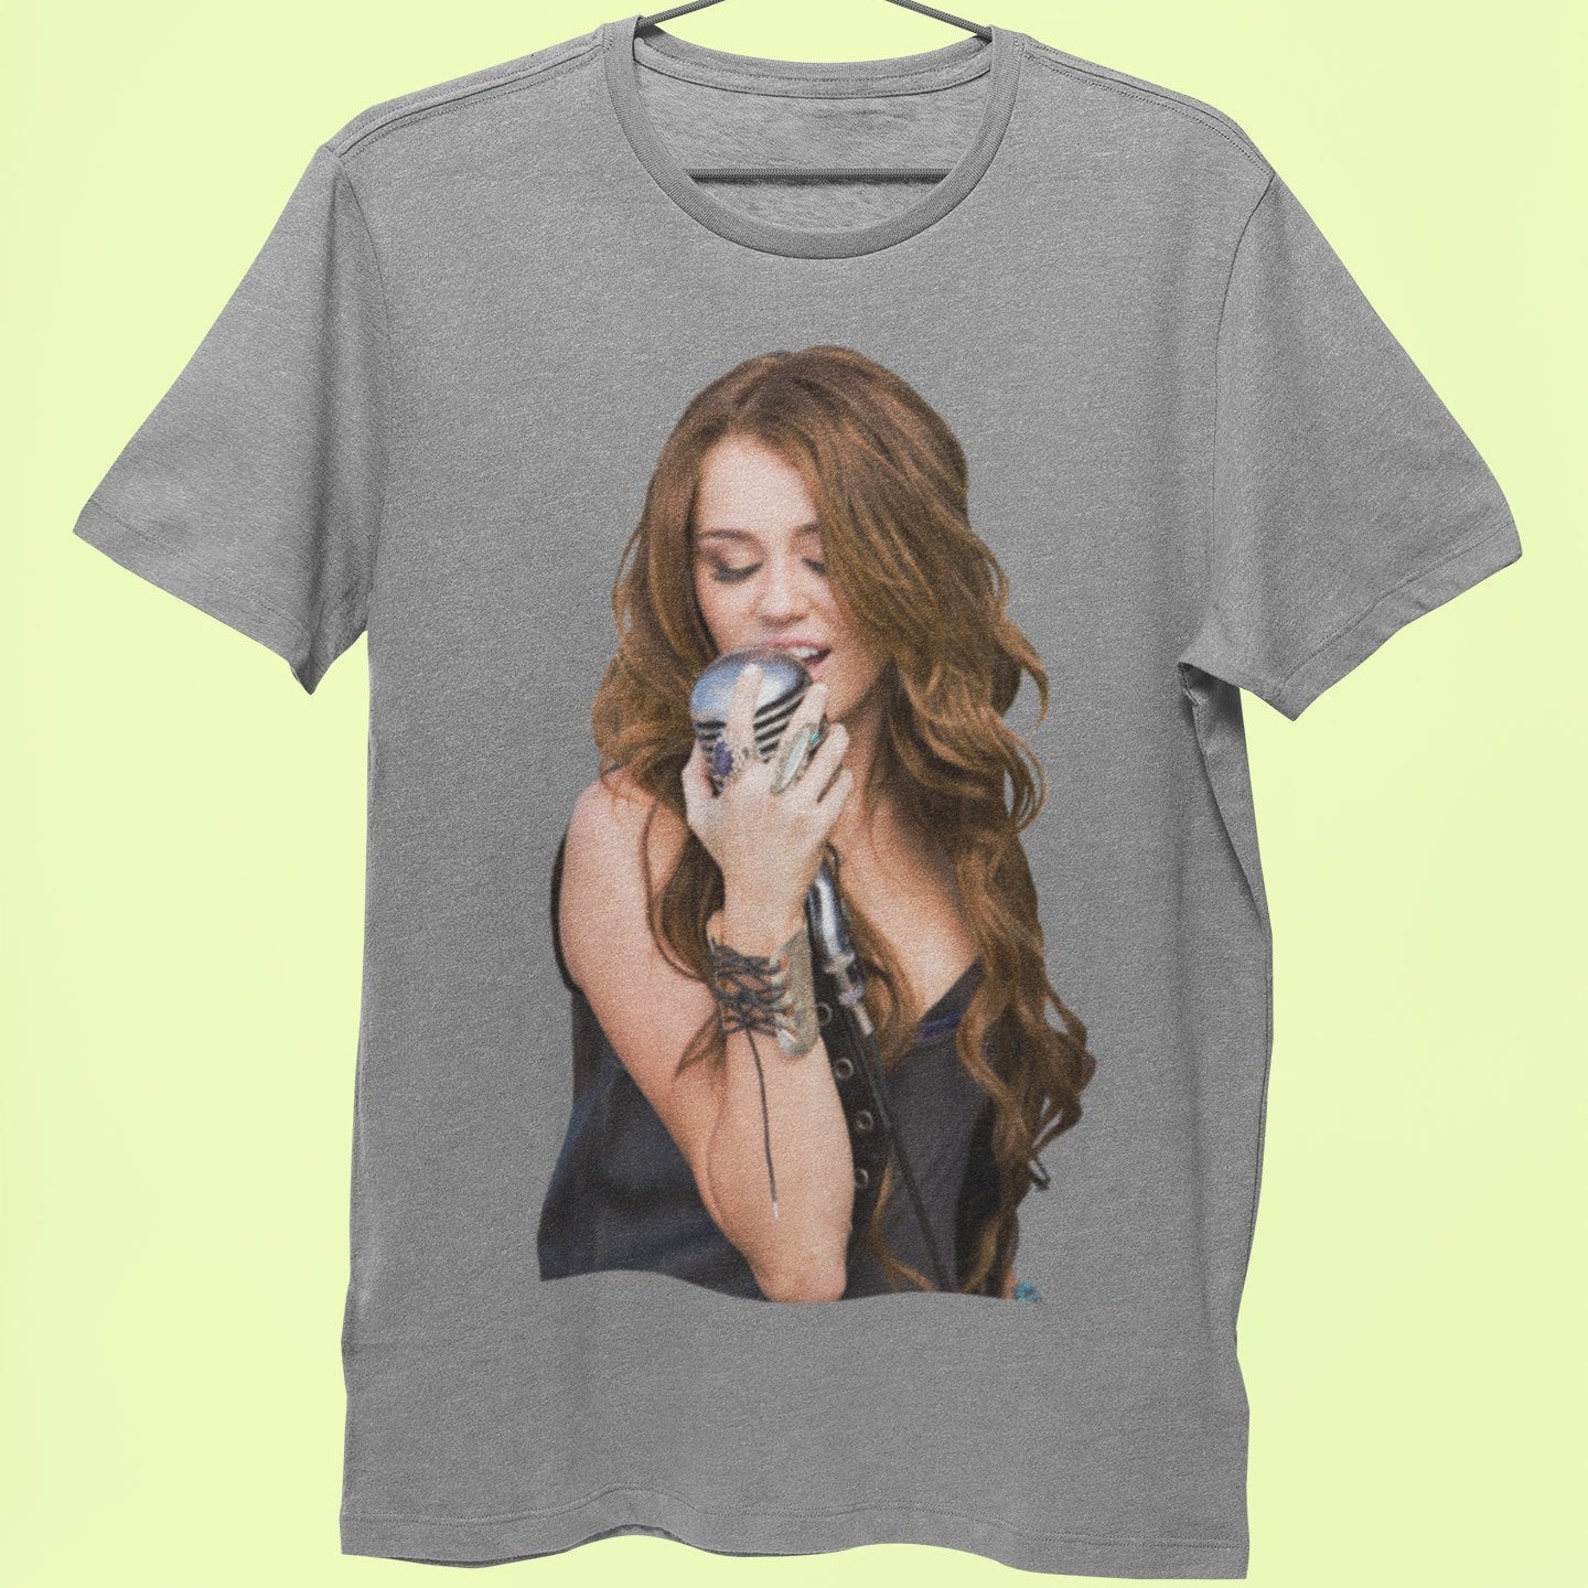 Miley Cyrus tshirt Woman's shirt Miley Cyrus 90s | Etsy